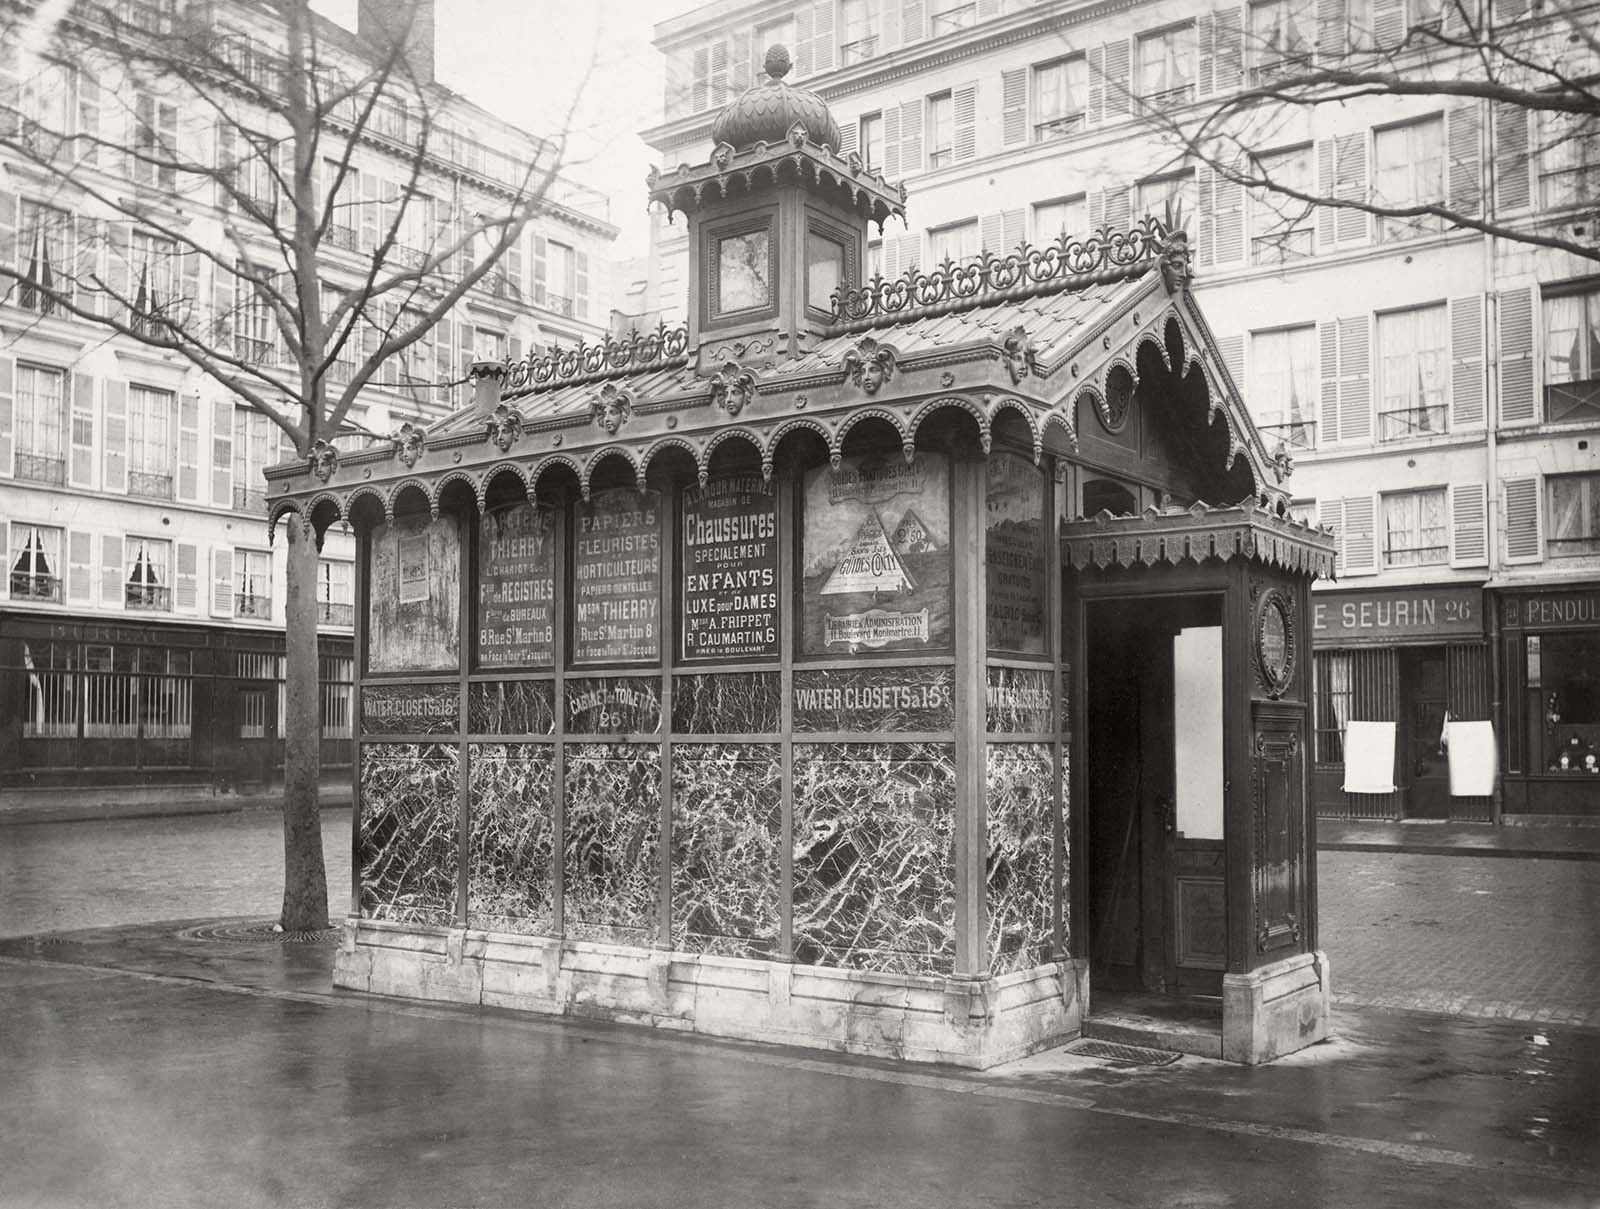 pissoir vintage public urinals paris